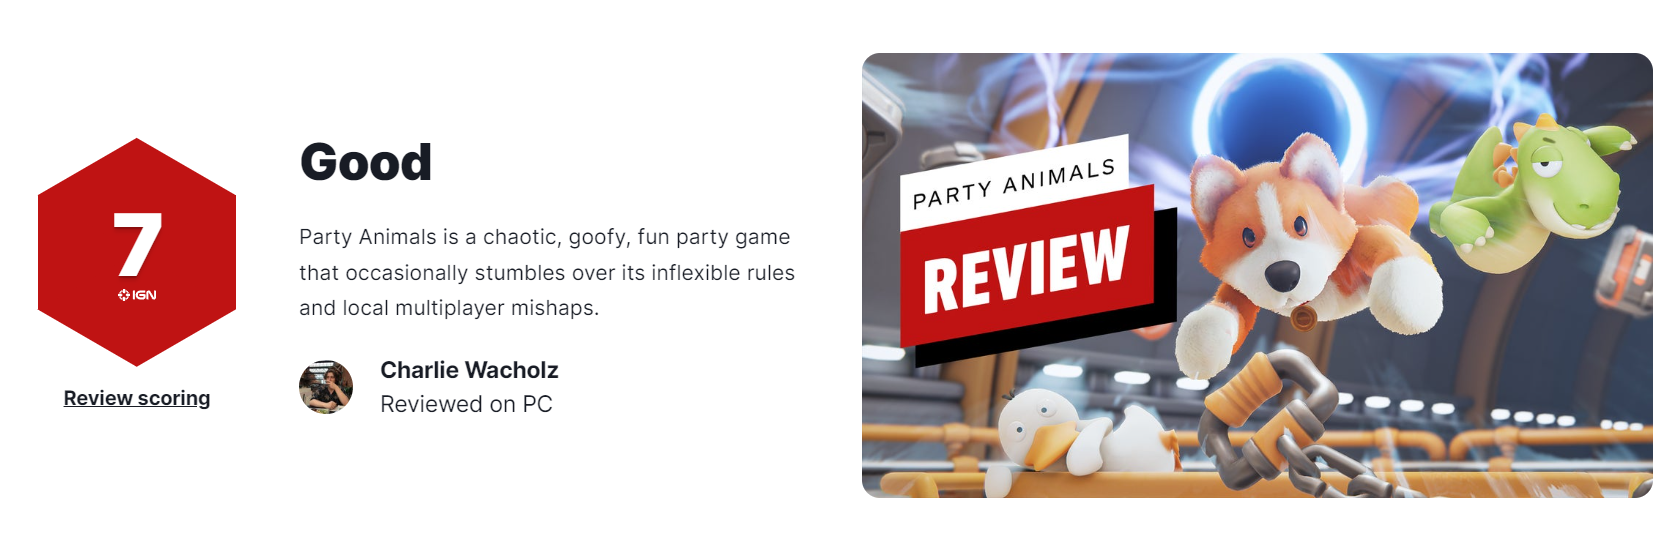 IGN評分:7分 動物派對是一個混亂而有趣的派對遊戯